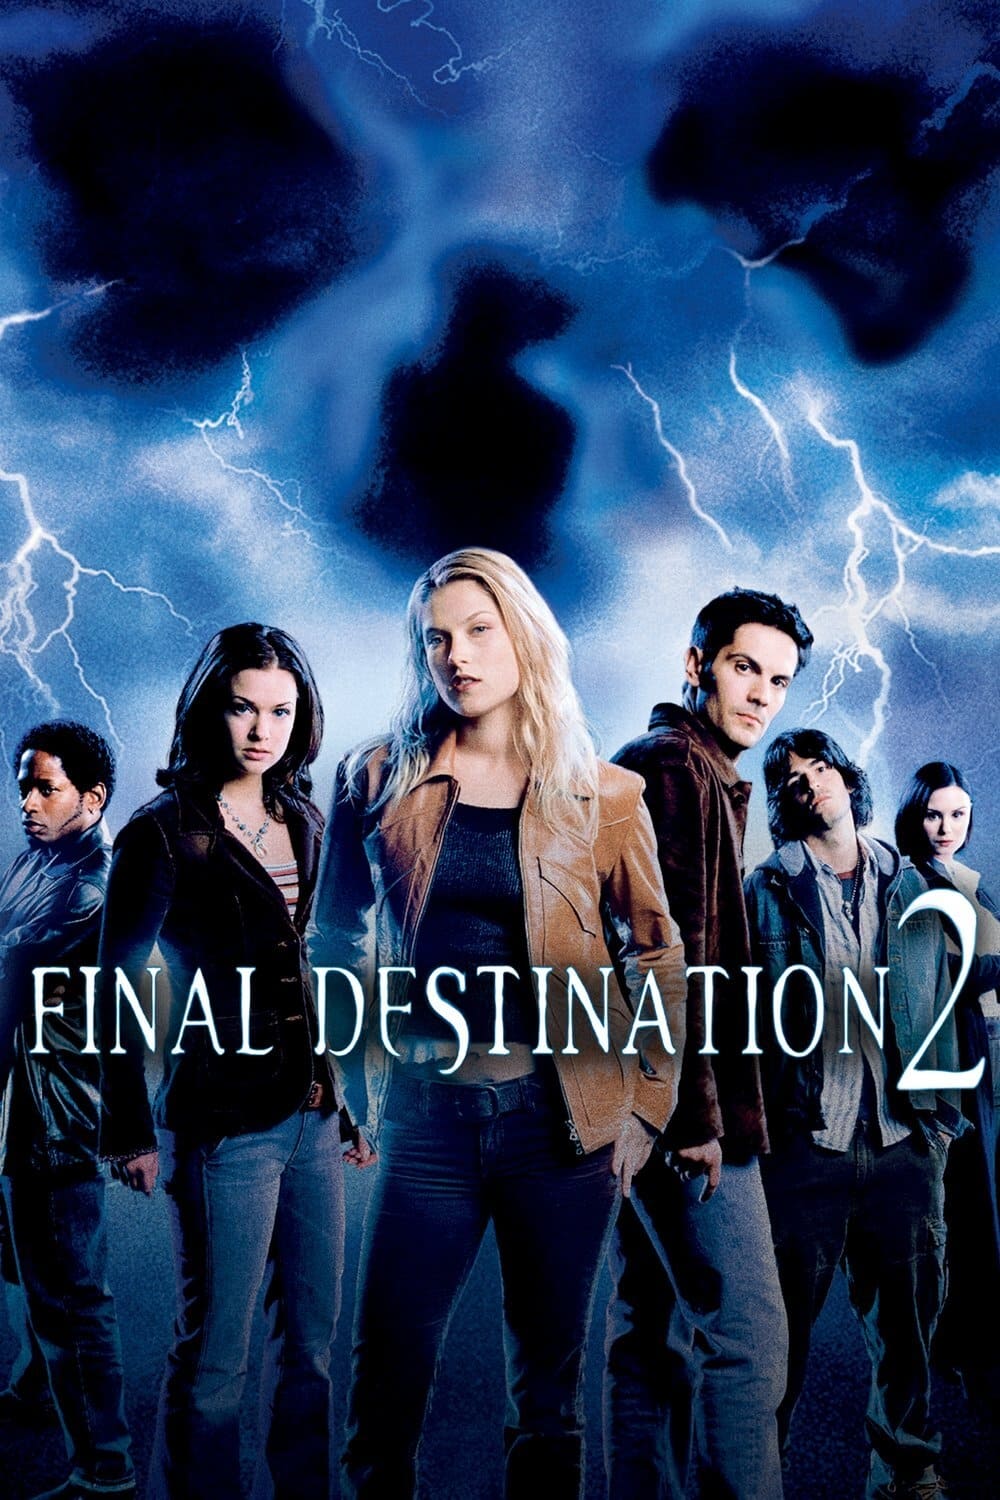 Final Destination 2 (2003)